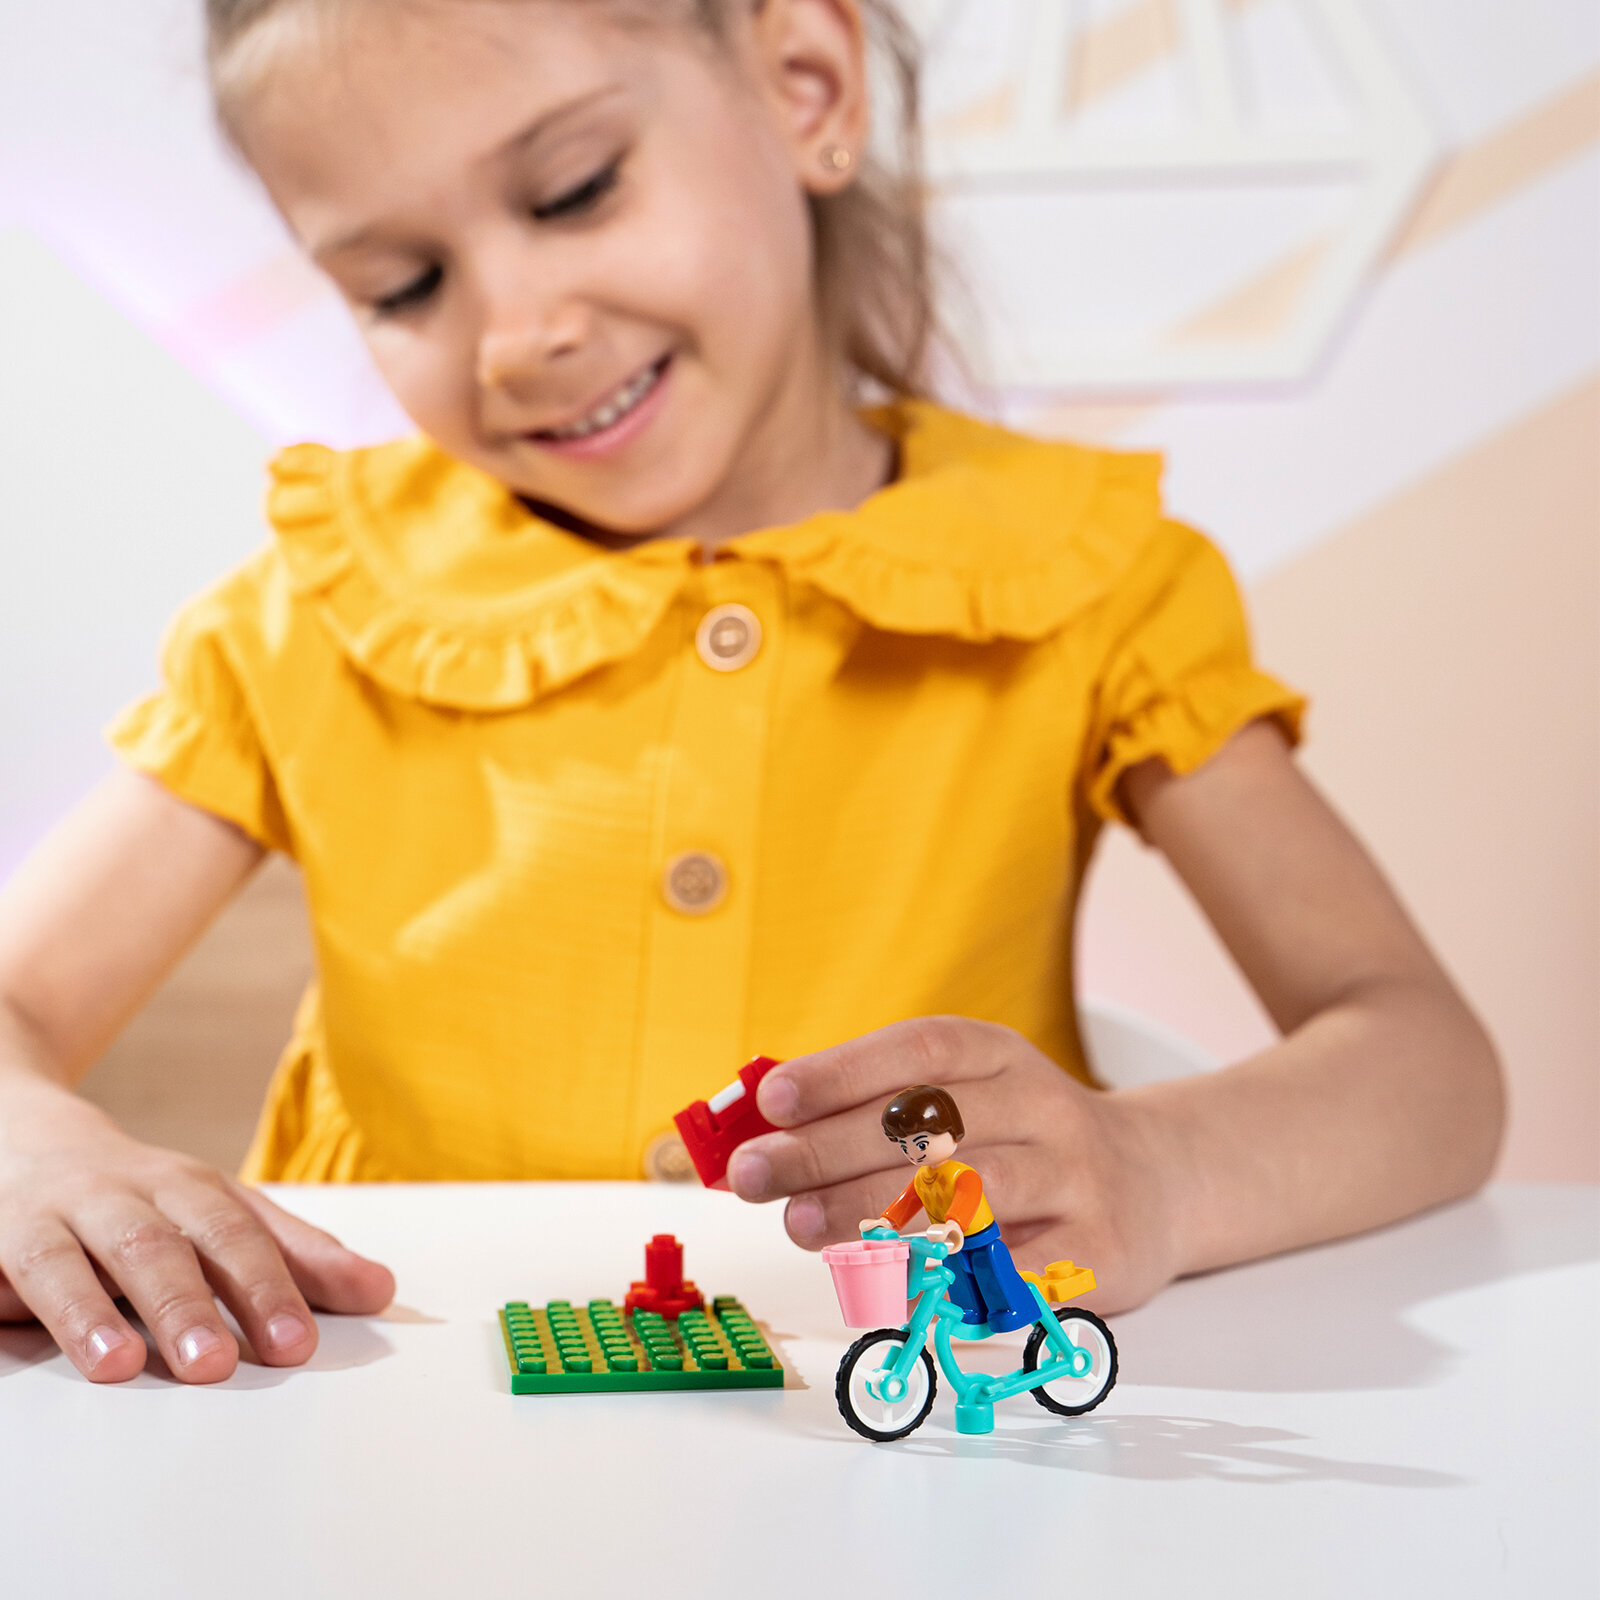 Детский конструктор Розовая мечта "Курьер на велосипеде", 29 деталей, для девочки